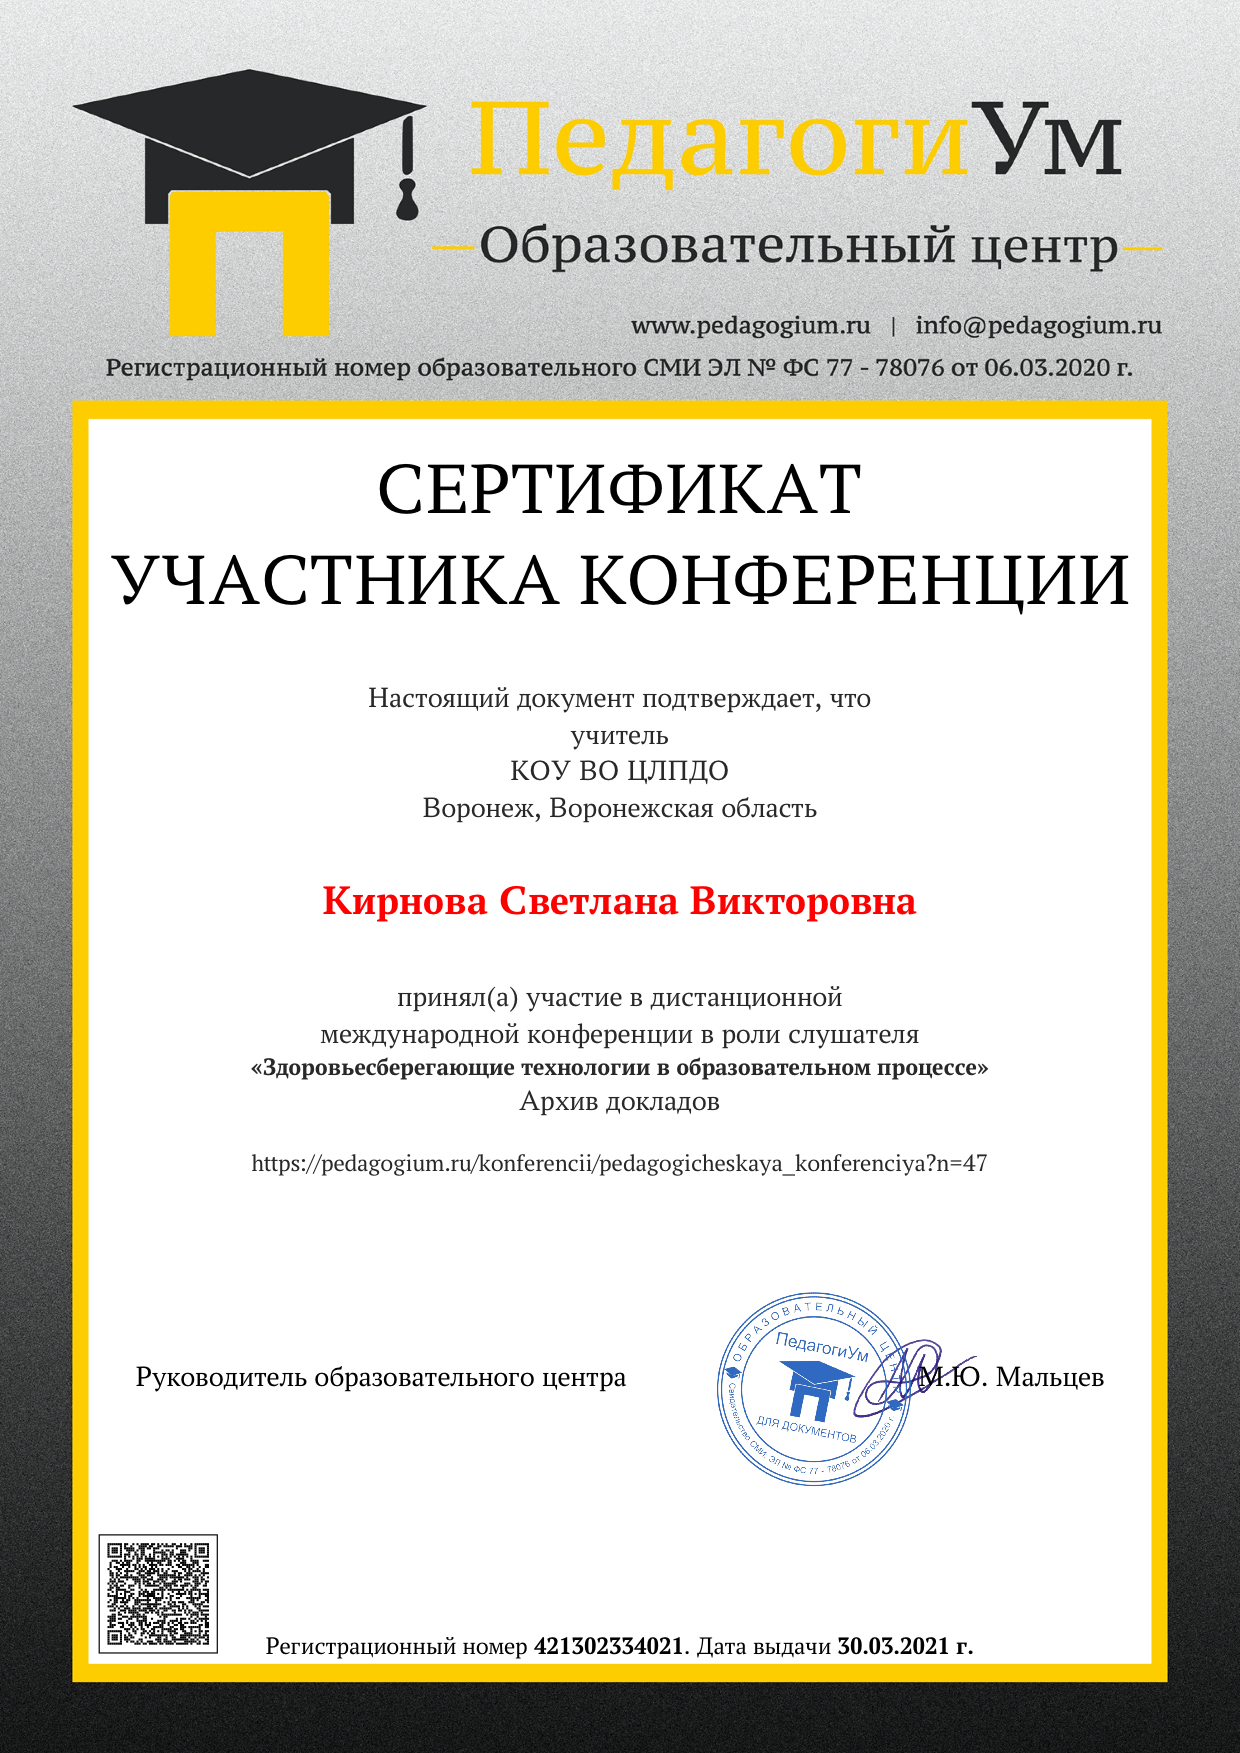 Образец документа слушателю за участие в дистанционных конференциях центра ПедагогиУм.